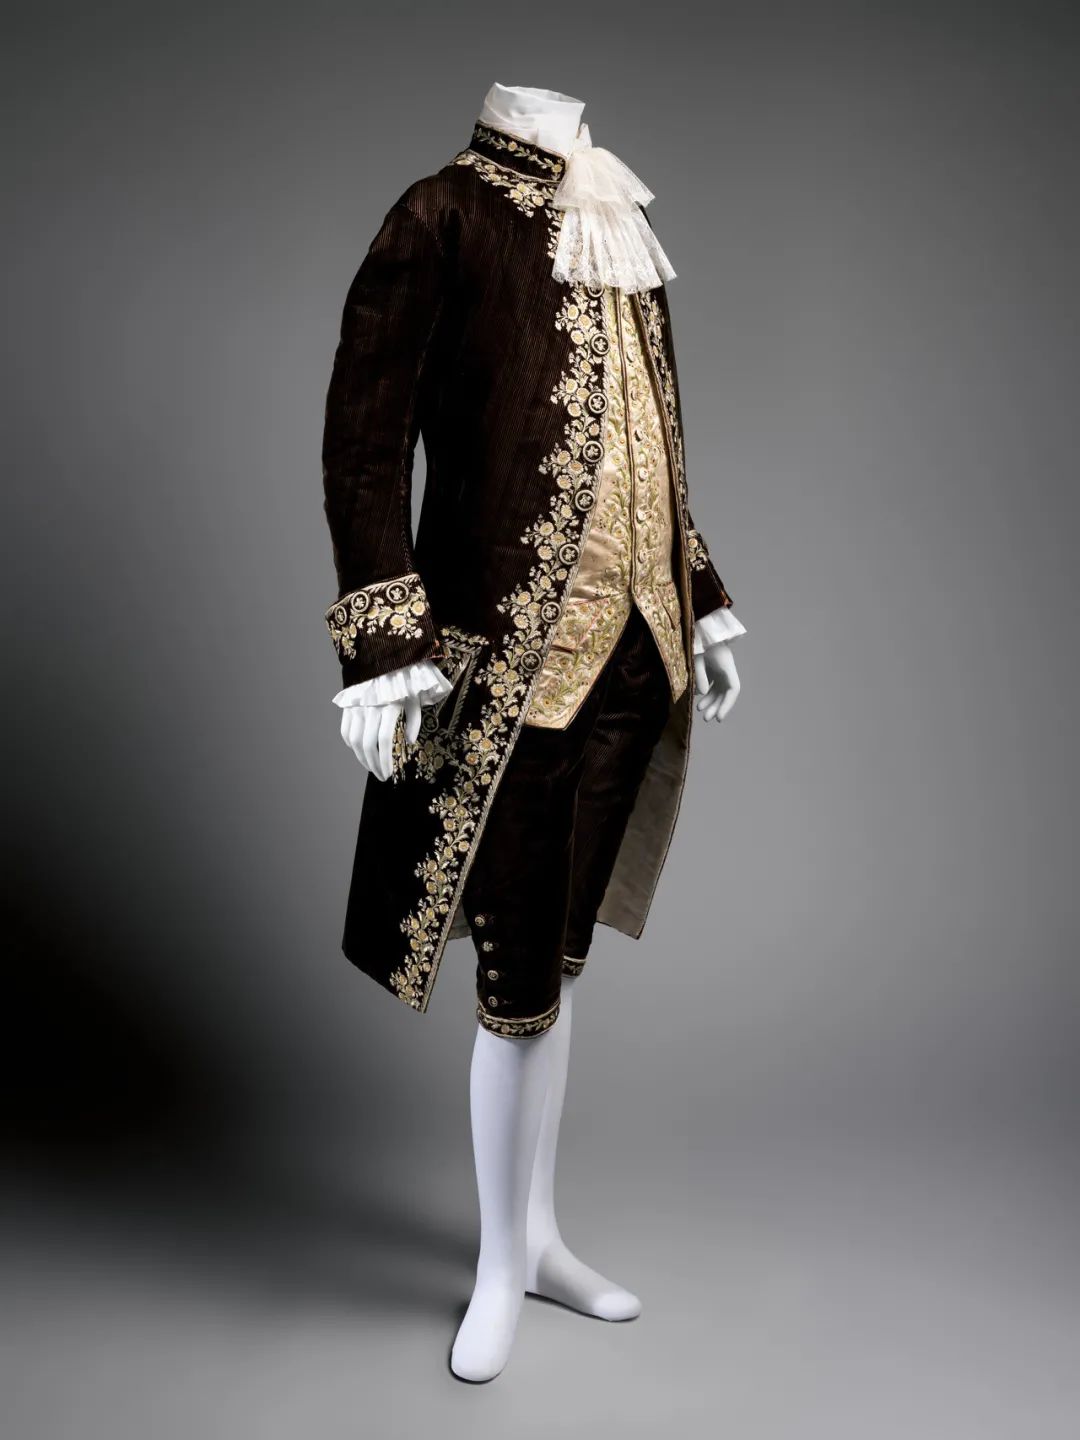 法国贵族男性服饰图片